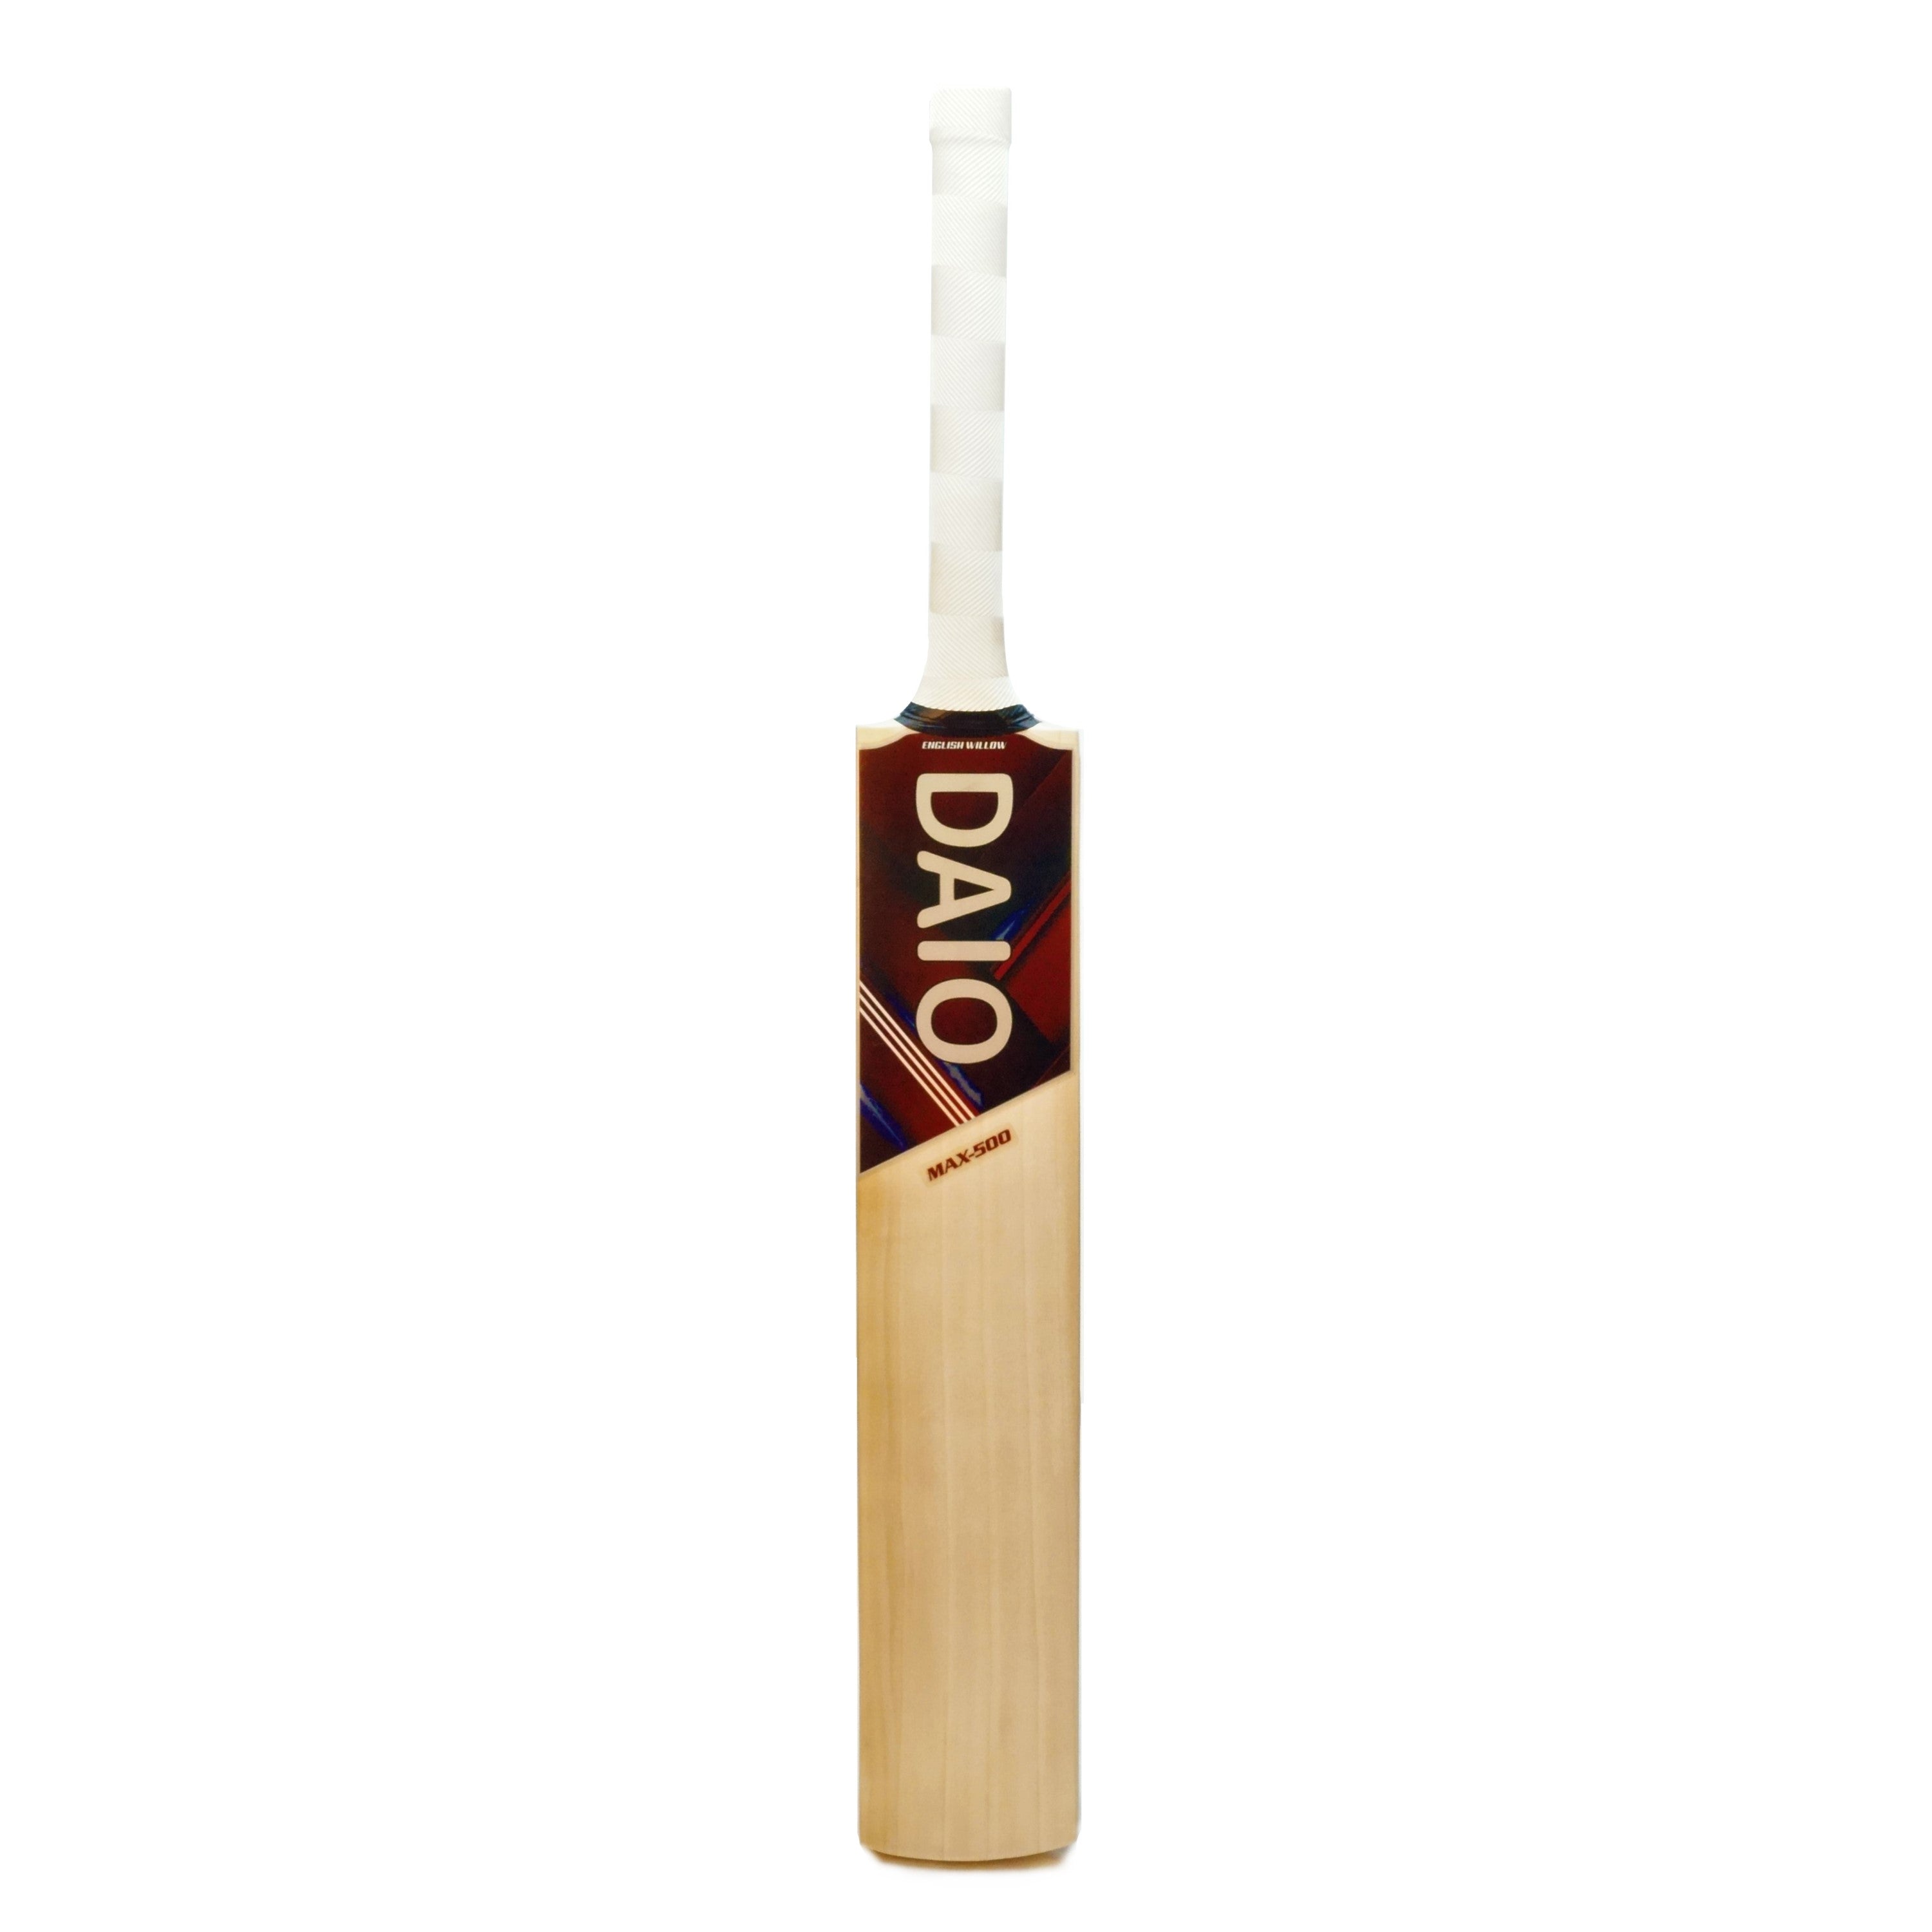 Daio Max-500 English willow cricket bat